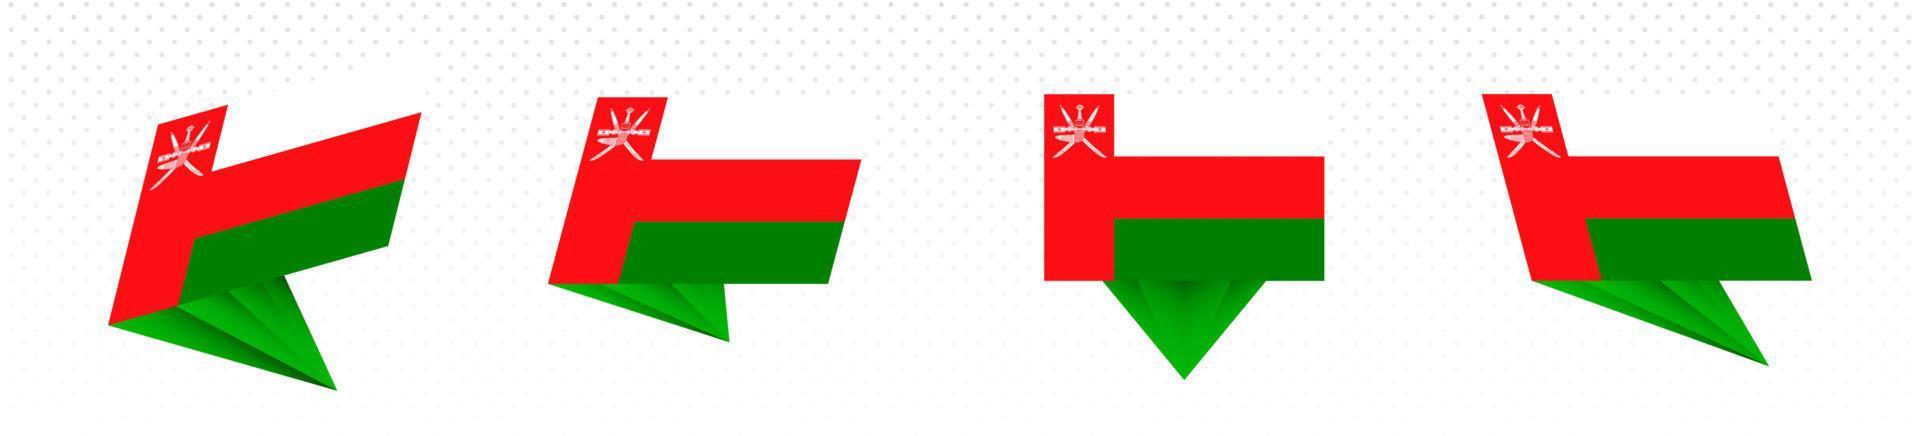 bandeira de omã em design abstrato moderno, conjunto de bandeiras. vetor